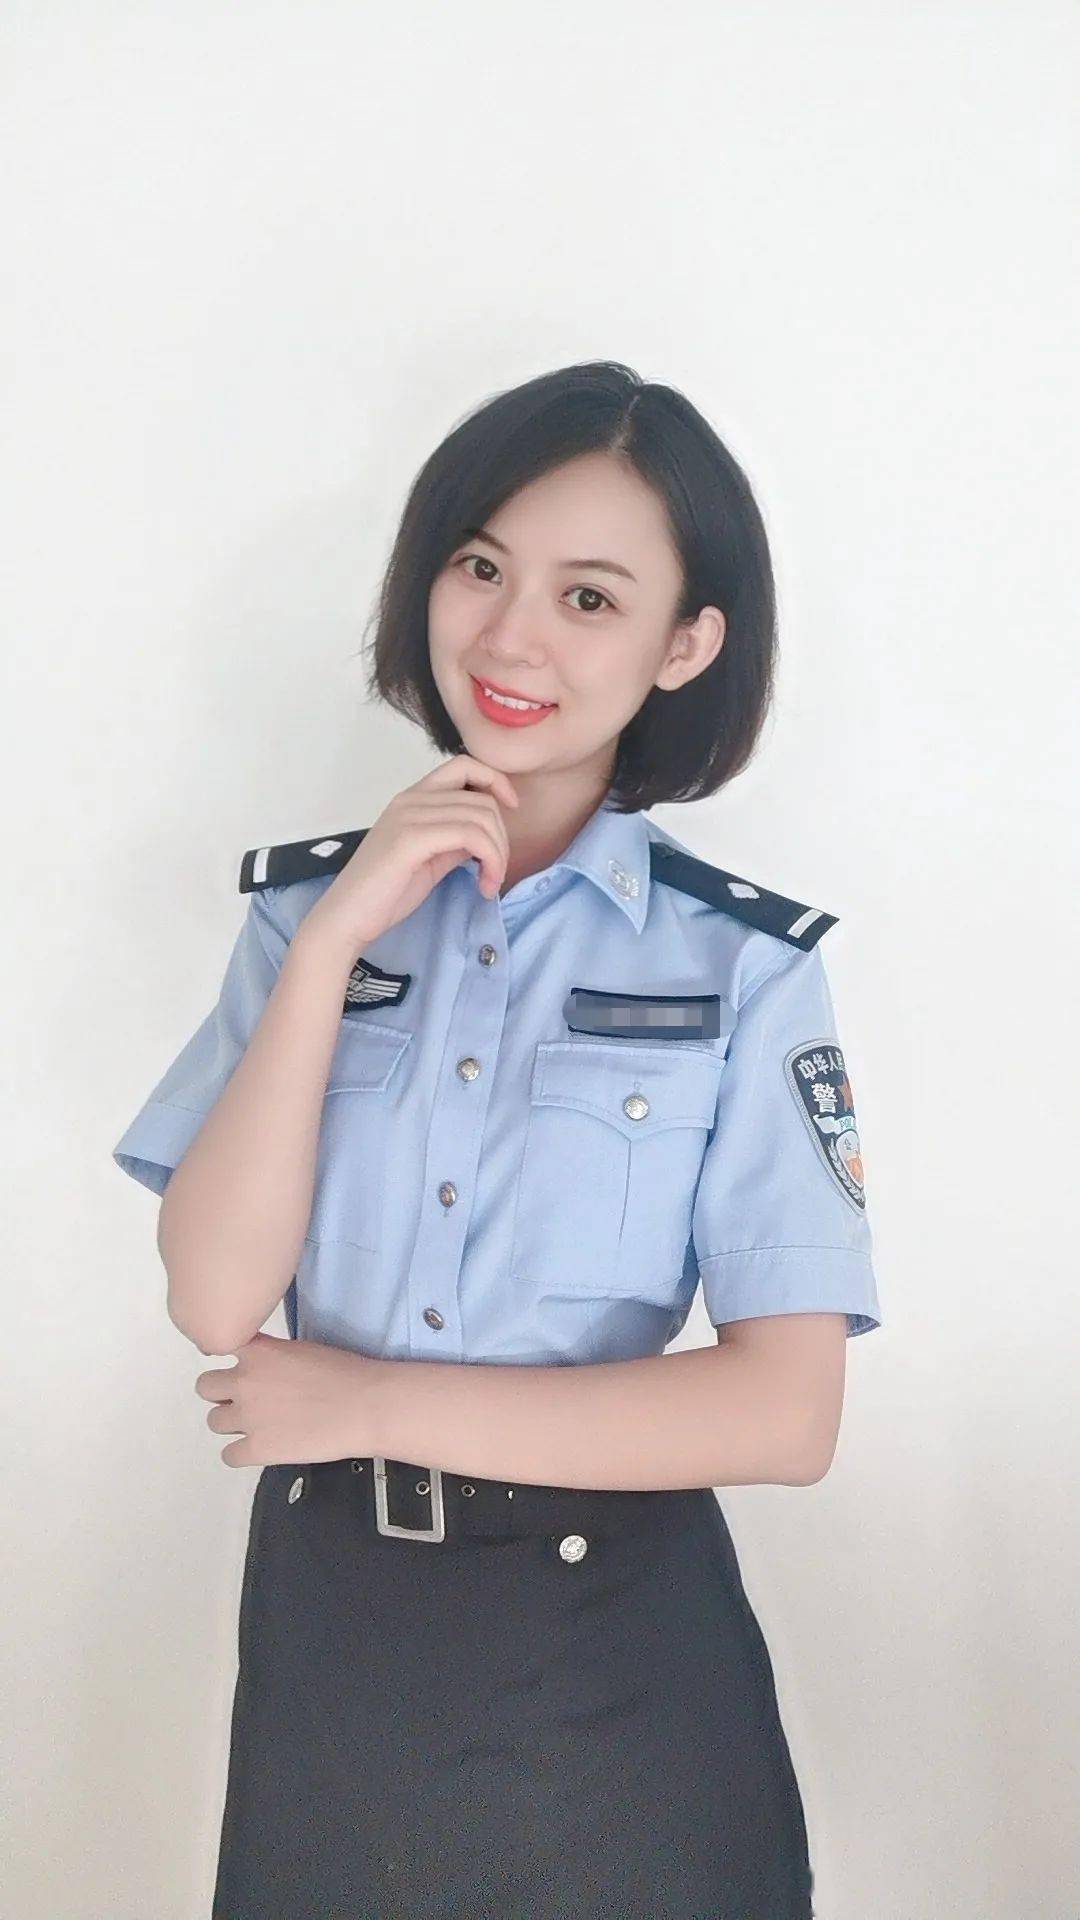 武汉警官职业学院校花图片